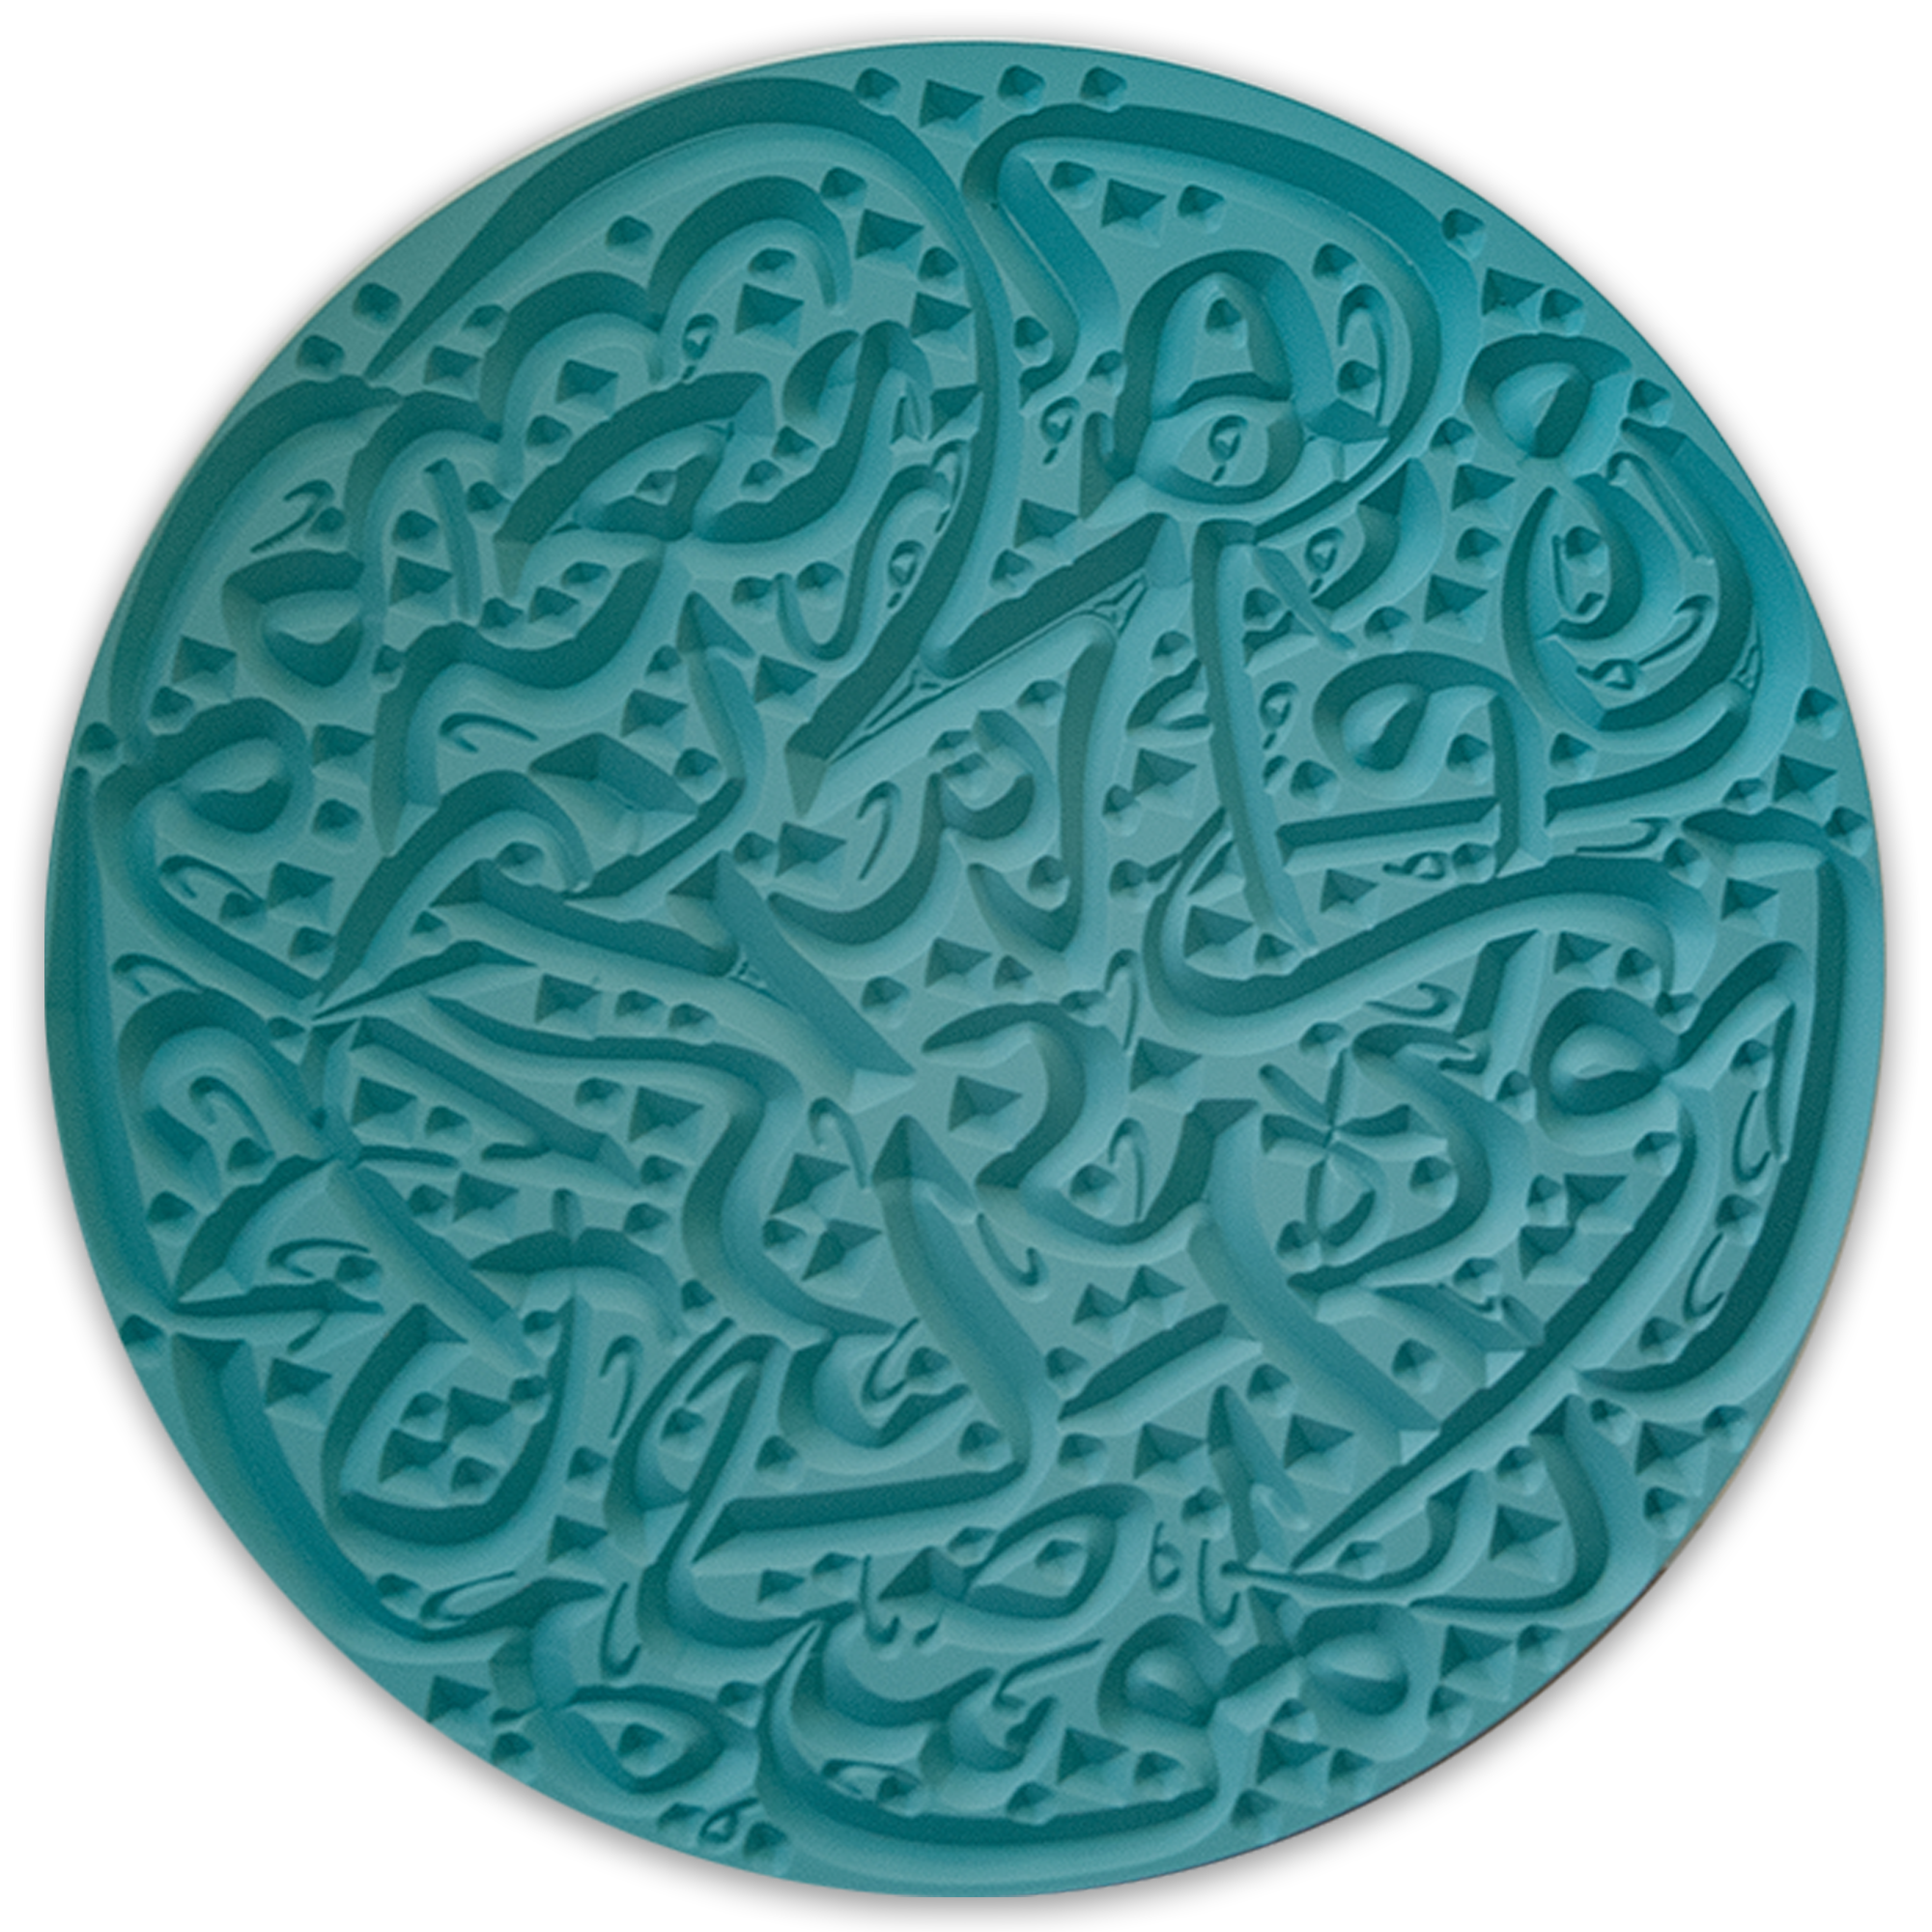 ROVATTI الواح تحفة الخط العربي الأزرق